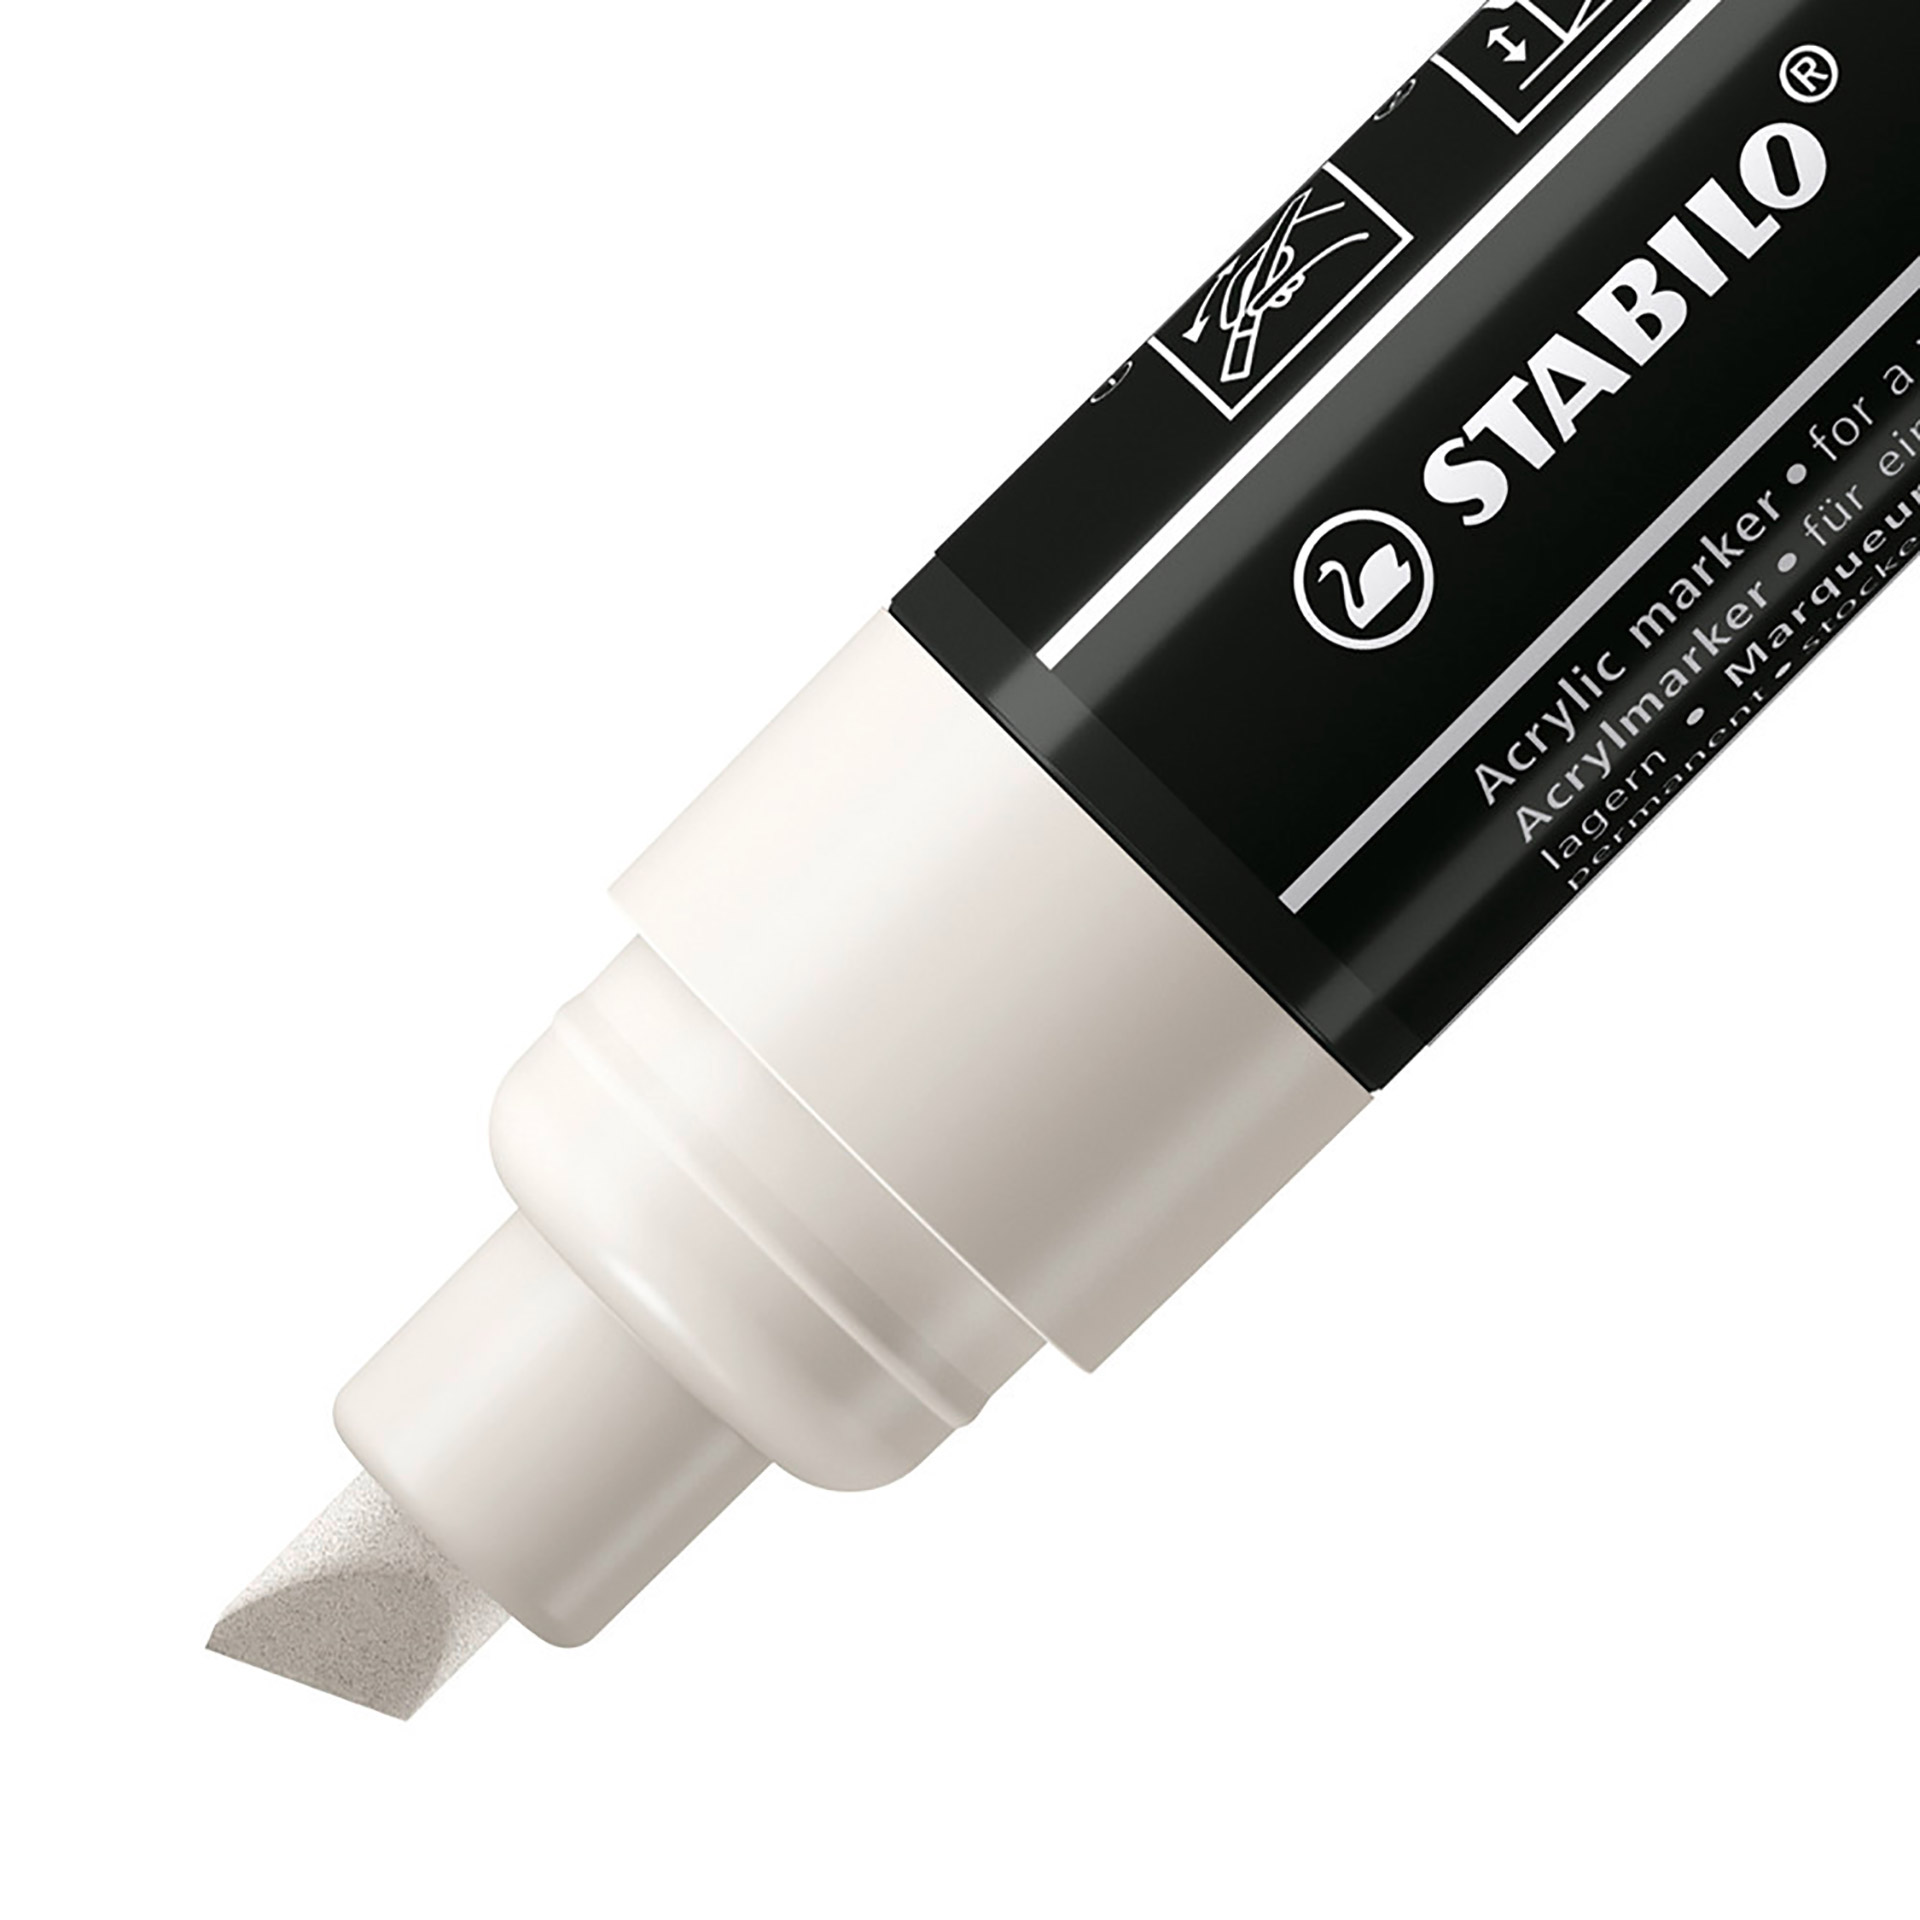 STABILO FREE Acrylic - T800C Punta a scalpello 4-10mm - Confezione da 5 - Bianco, , large